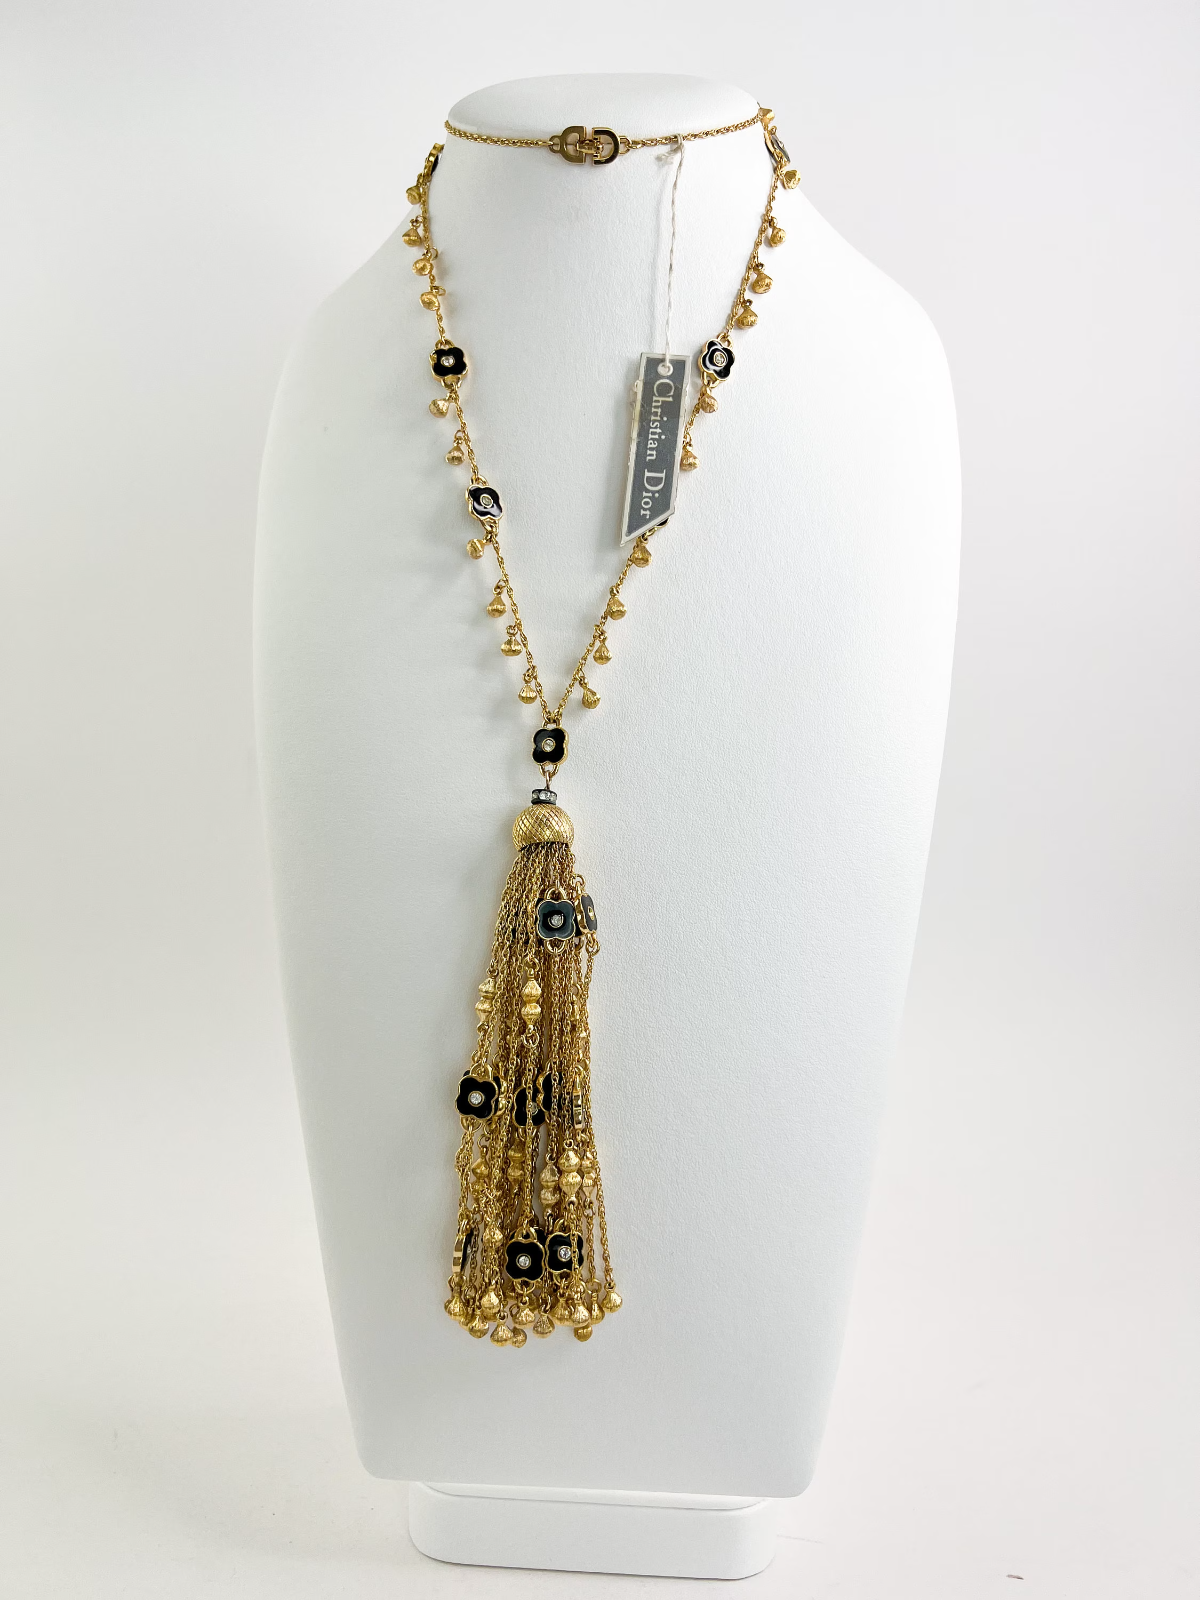 Vintage Christian Dior Necklace, Vintage Dior necklace Fringe, Dior Germany Gold Tone Choker Necklace Dior Tassel necklace, charm necklace